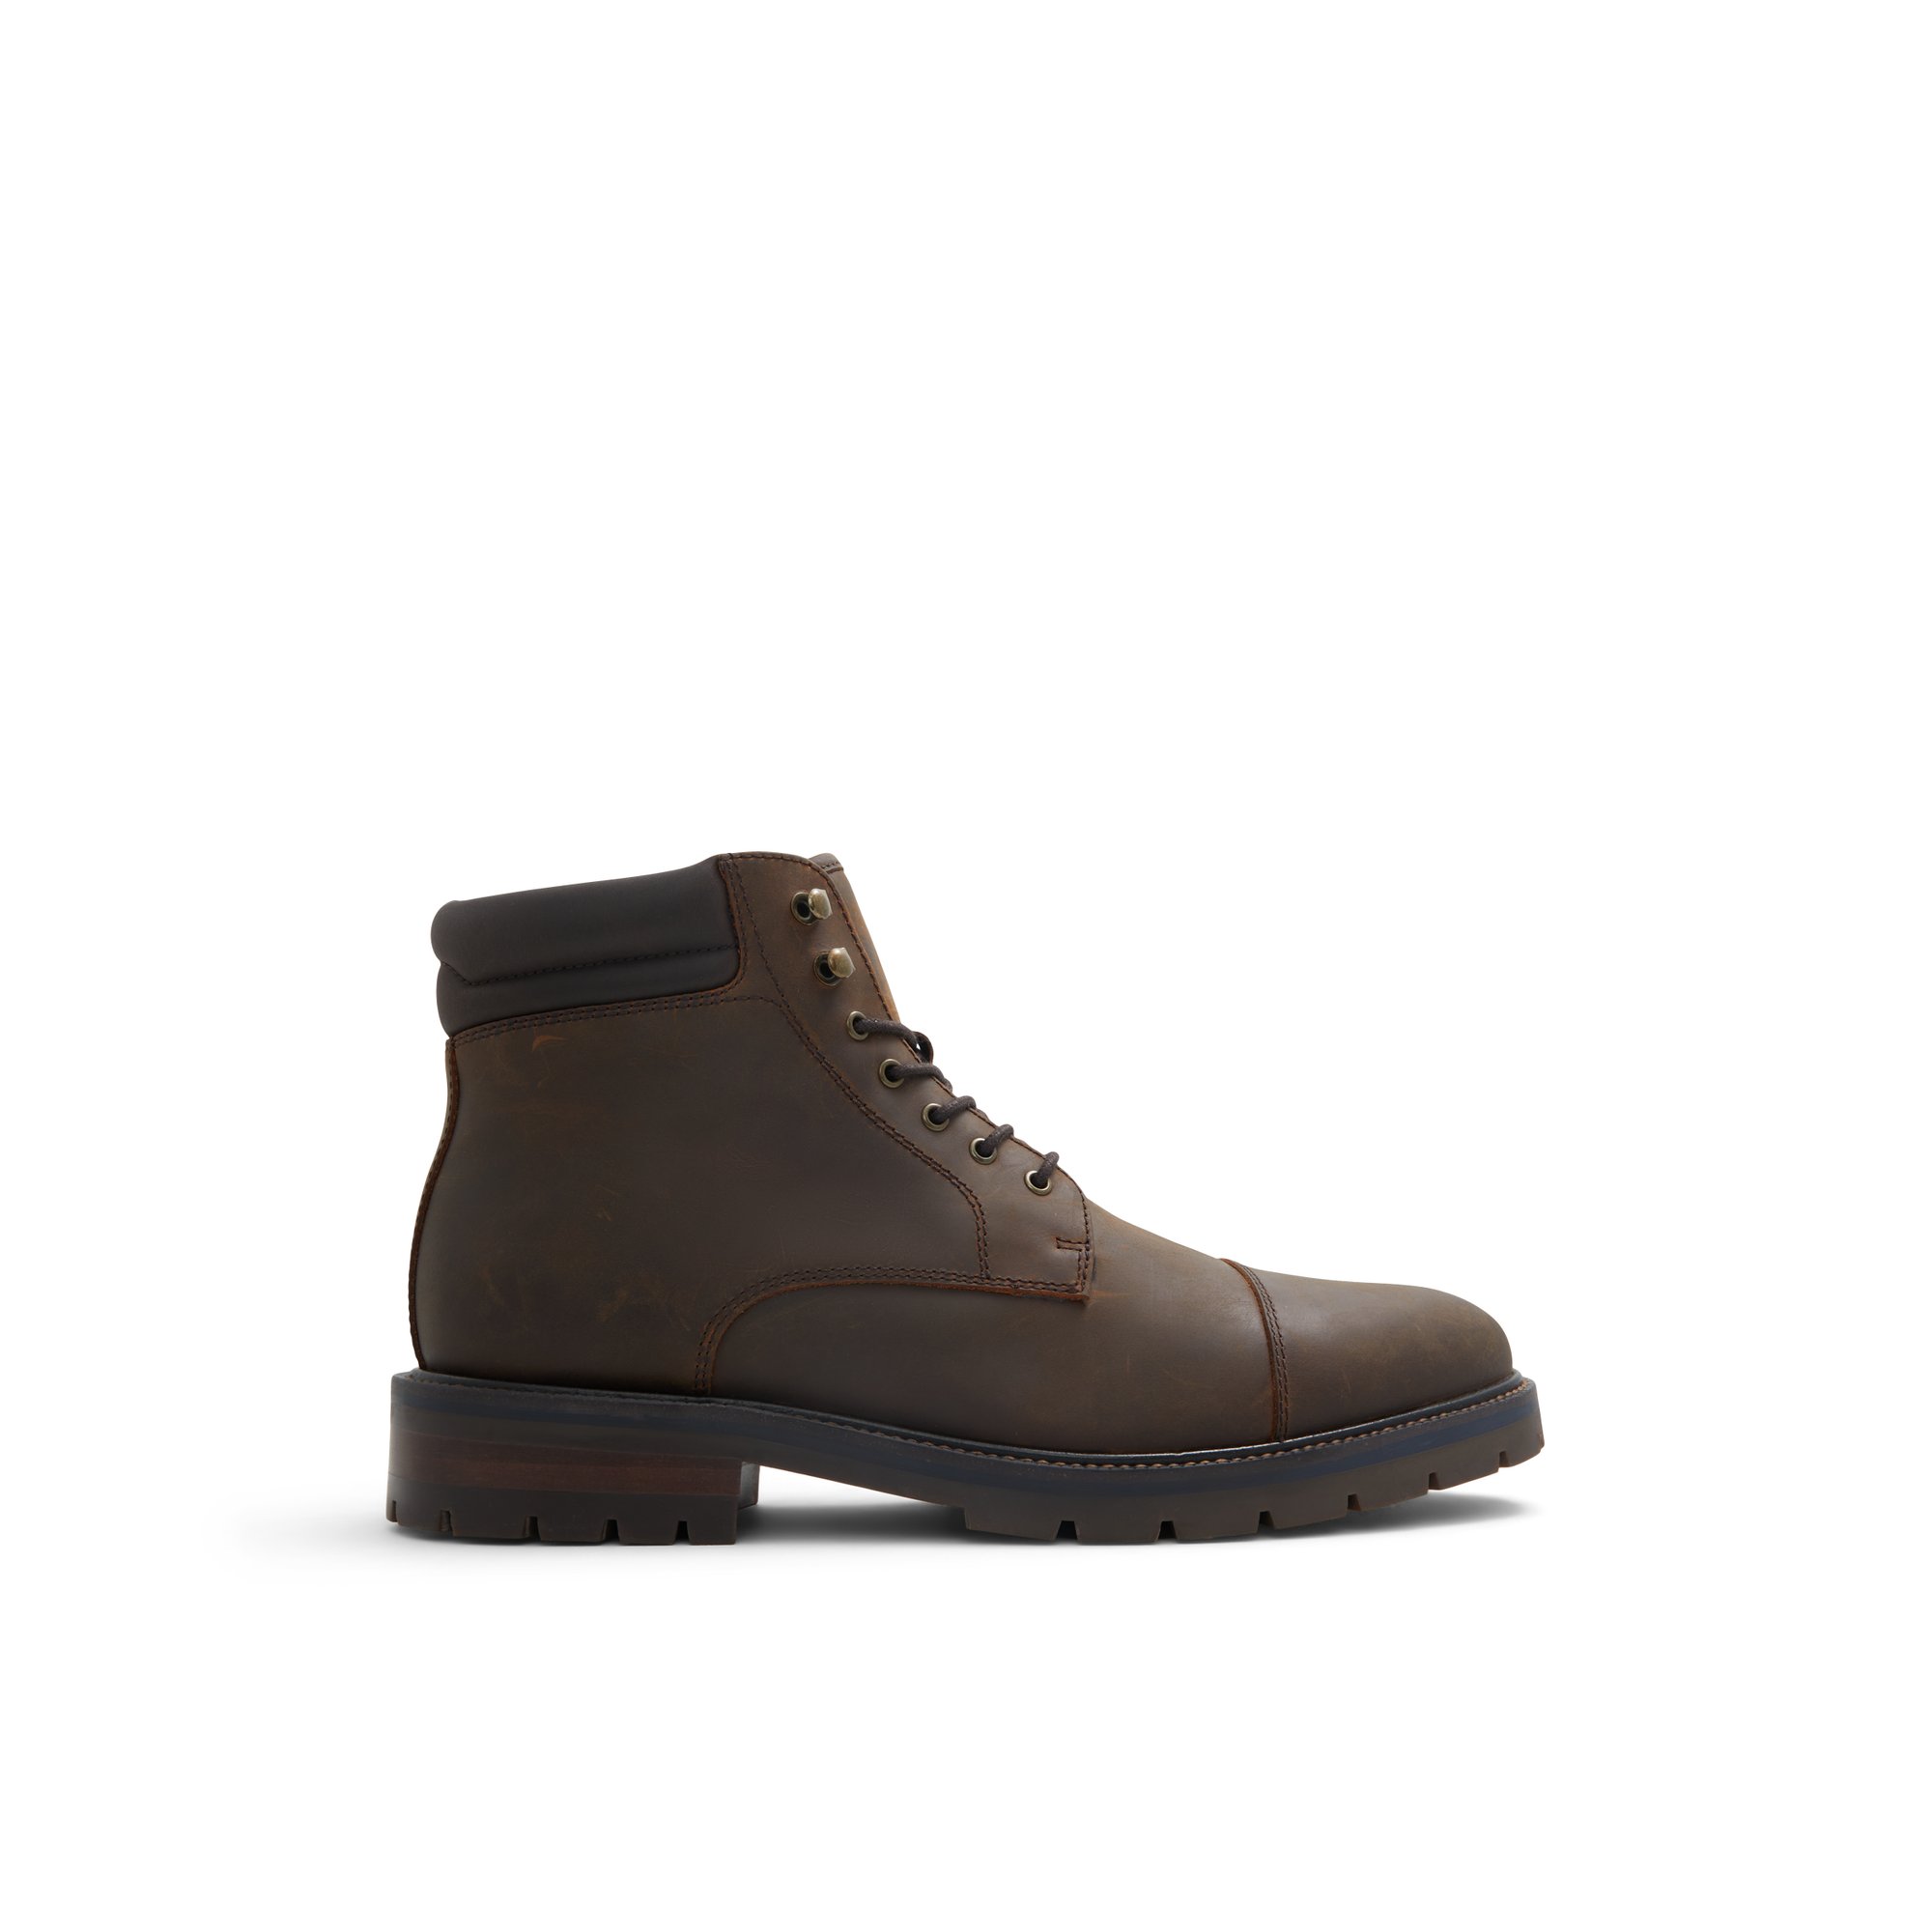 ALDO Avior-l - Men's Boots Casual - Brown